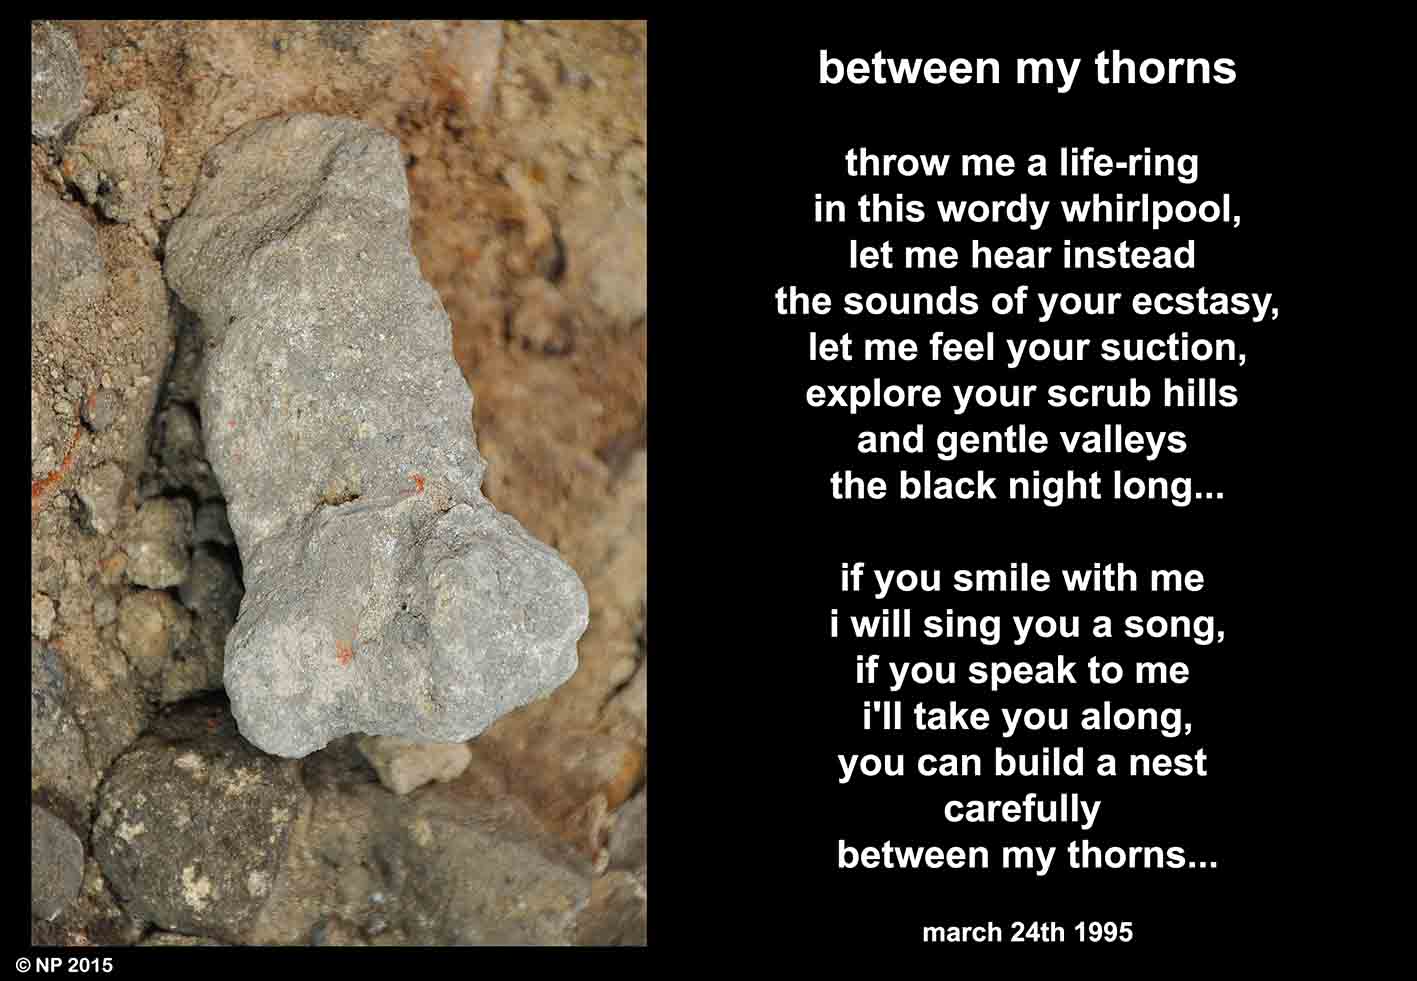 000 between my thorns